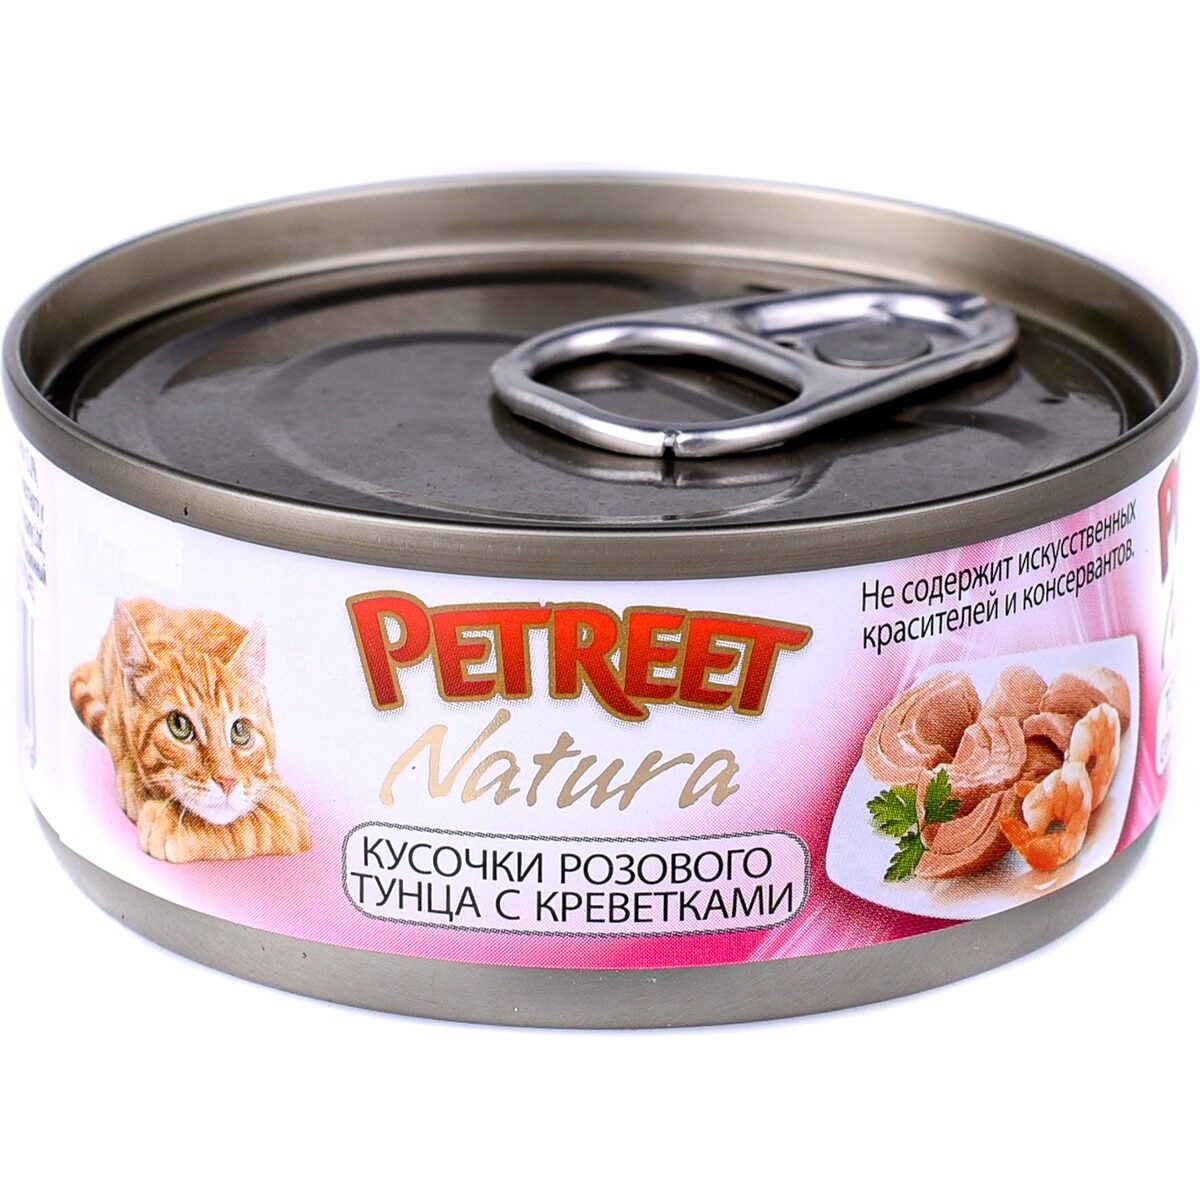 Консервы «Petreet розового тунца с креветками» для кошек (Жестяная банка, 70г)